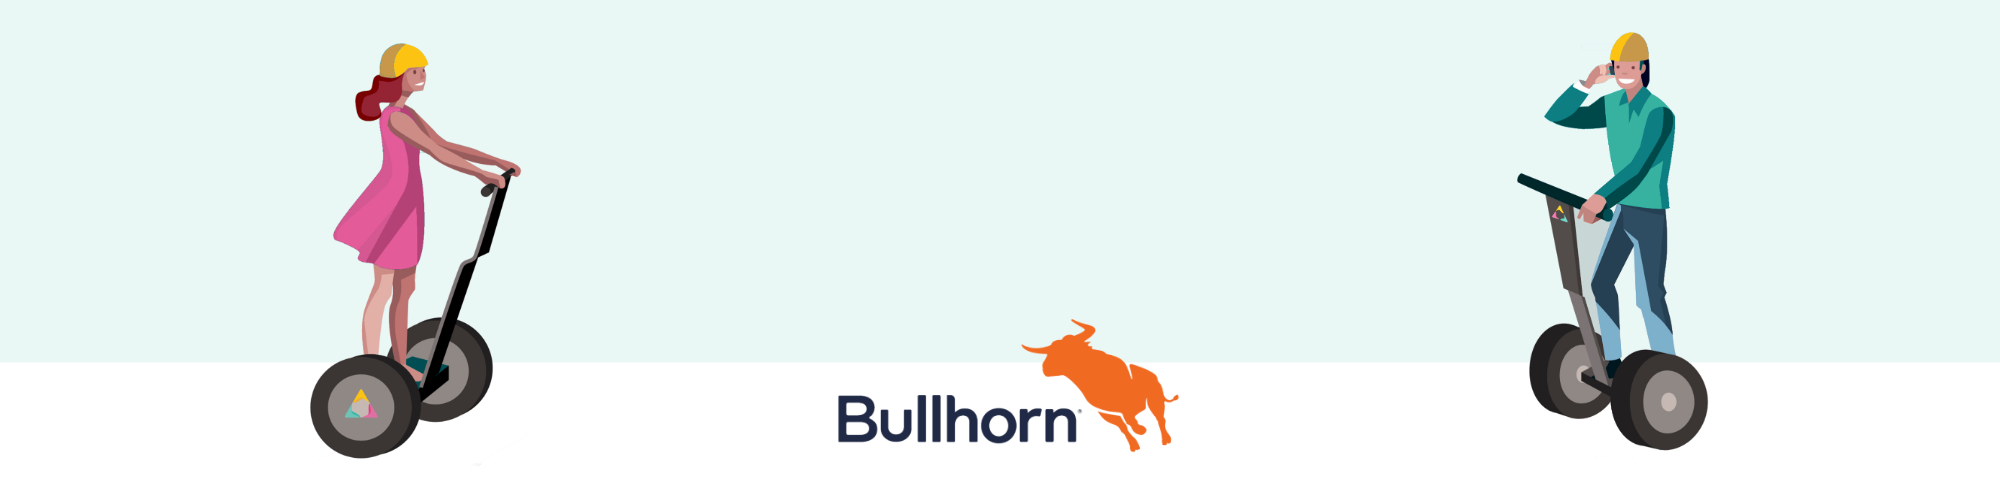 Best Bullhorn Tips for Recruiters